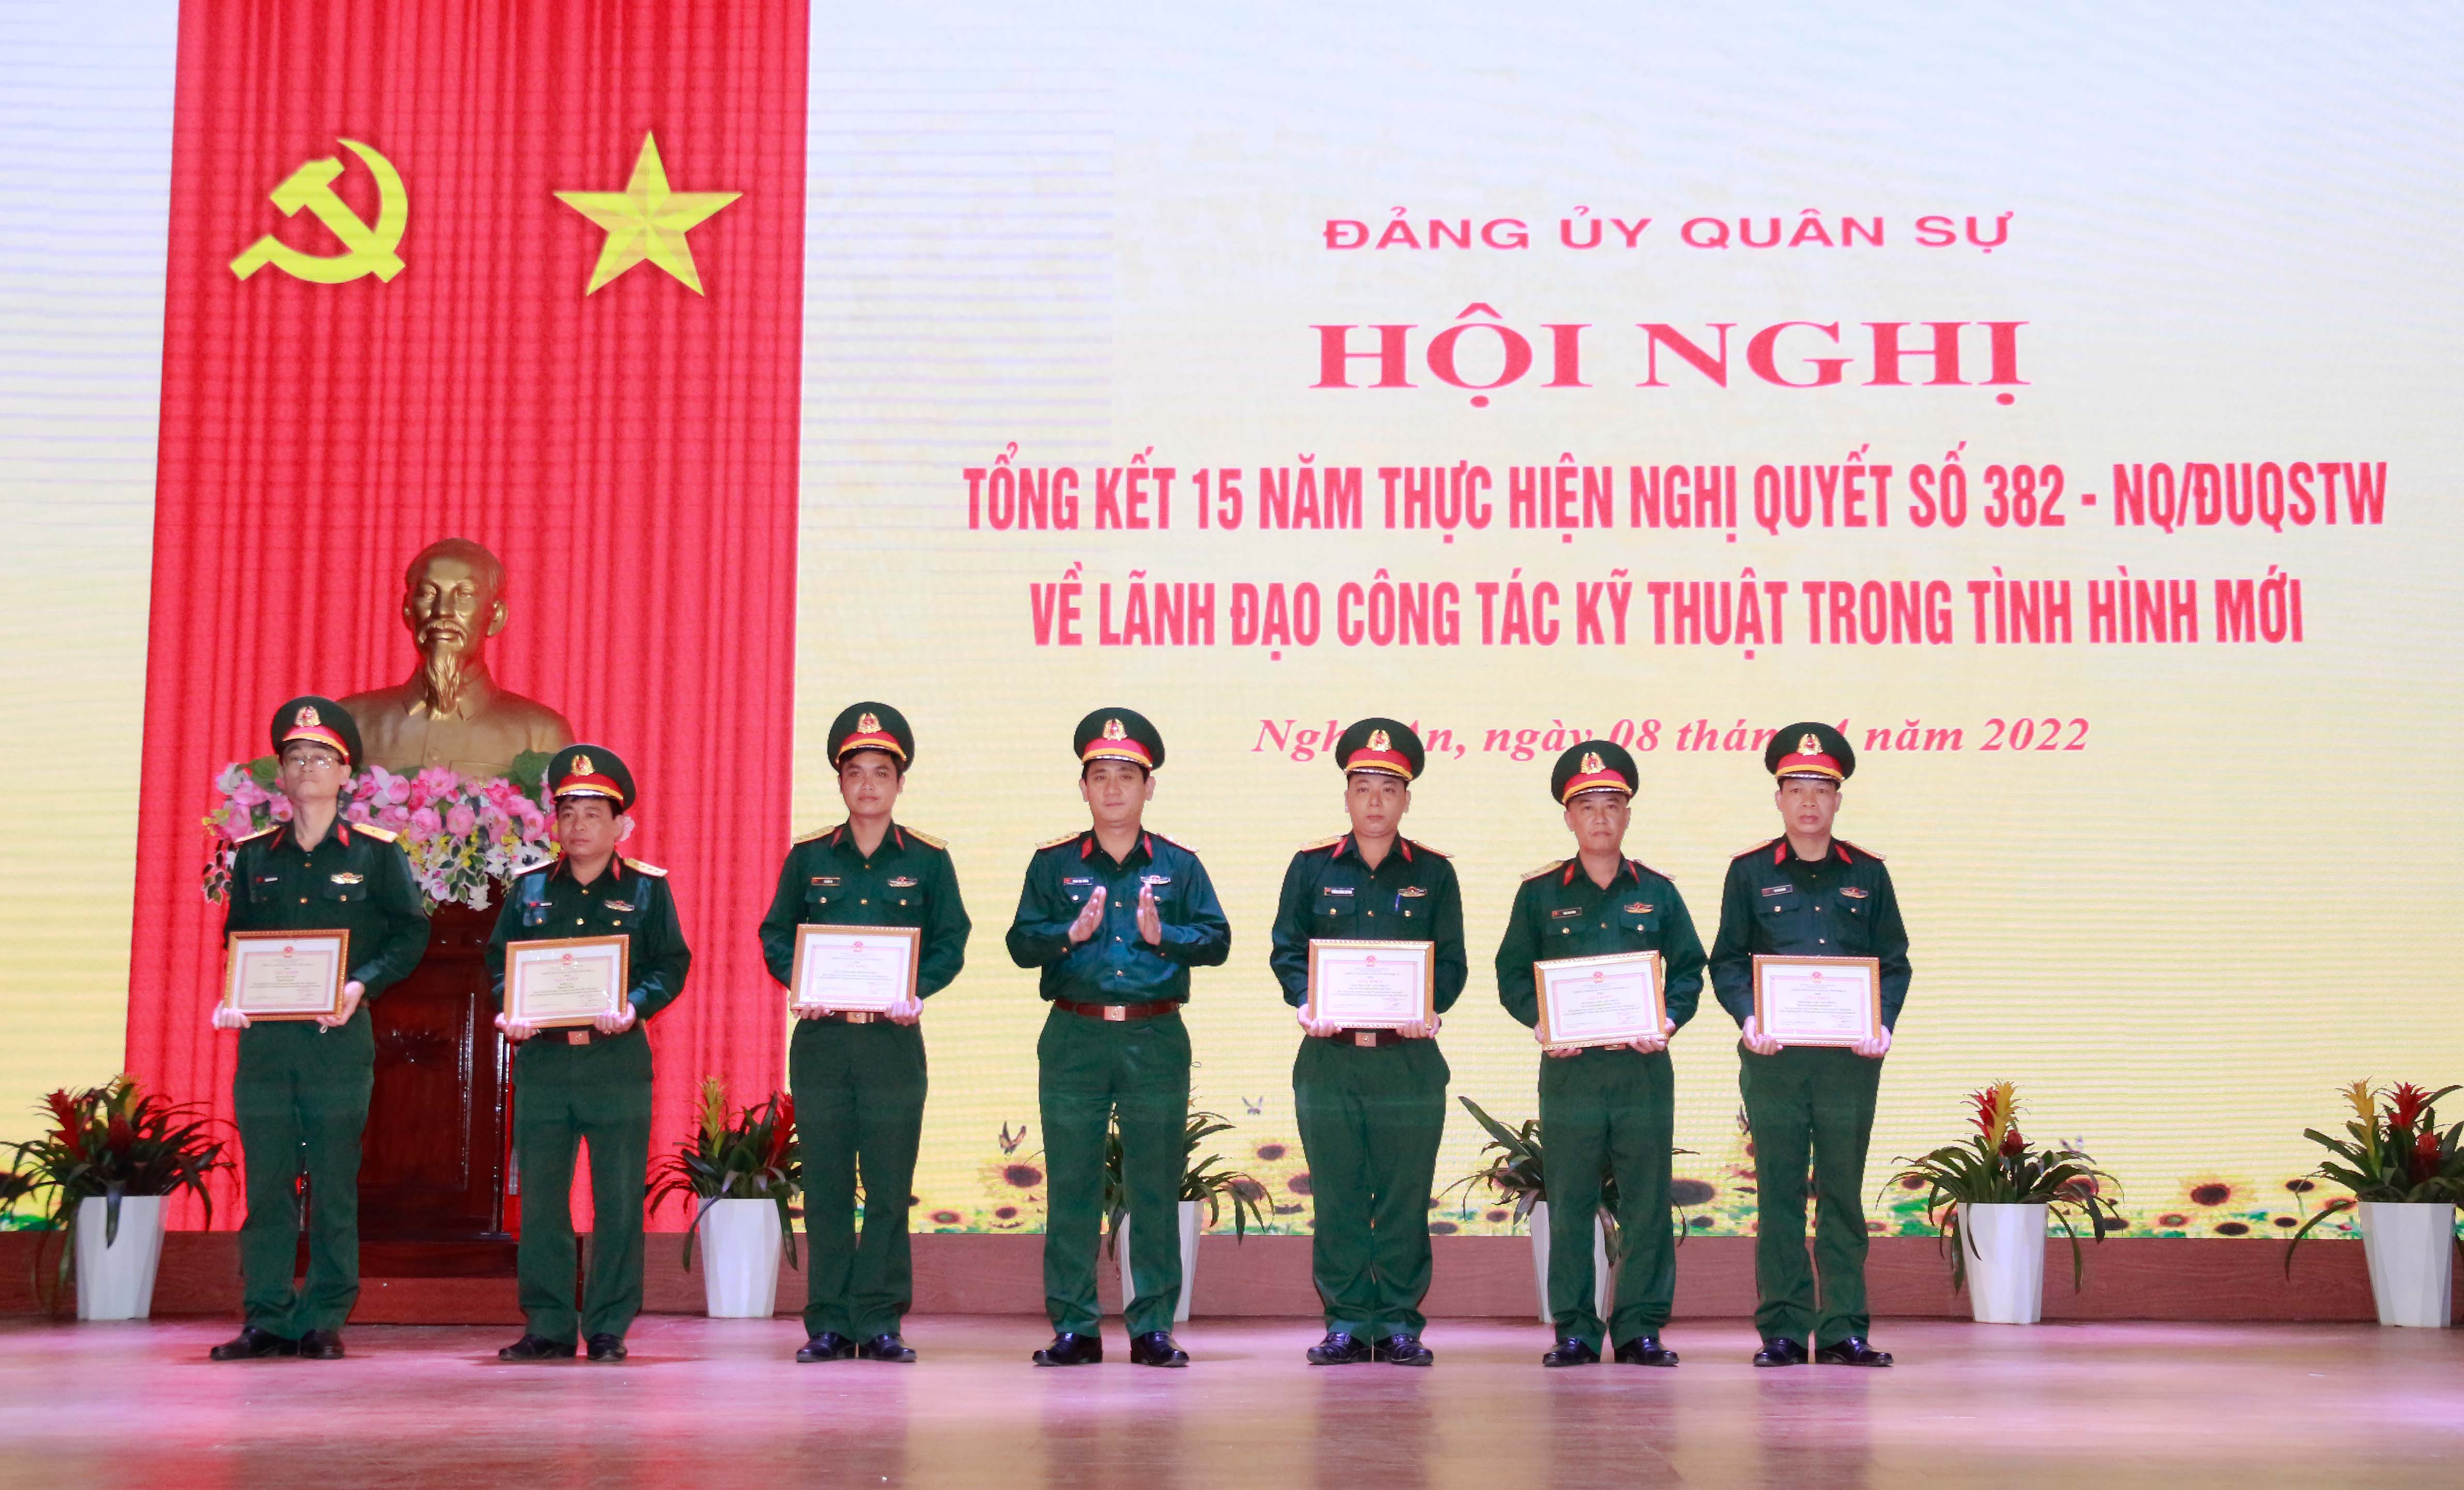 Thượng tá Phan Đại Nghĩa, Ủy viên BTV Tỉnh ủy - Chỉ huy trưởng Bộ CHQS tỉnh trao bằng khen cho các tập thể đạt thành tích tốt trong thực hiện Nghị quyết 382 -NQ/ ĐUQSTW